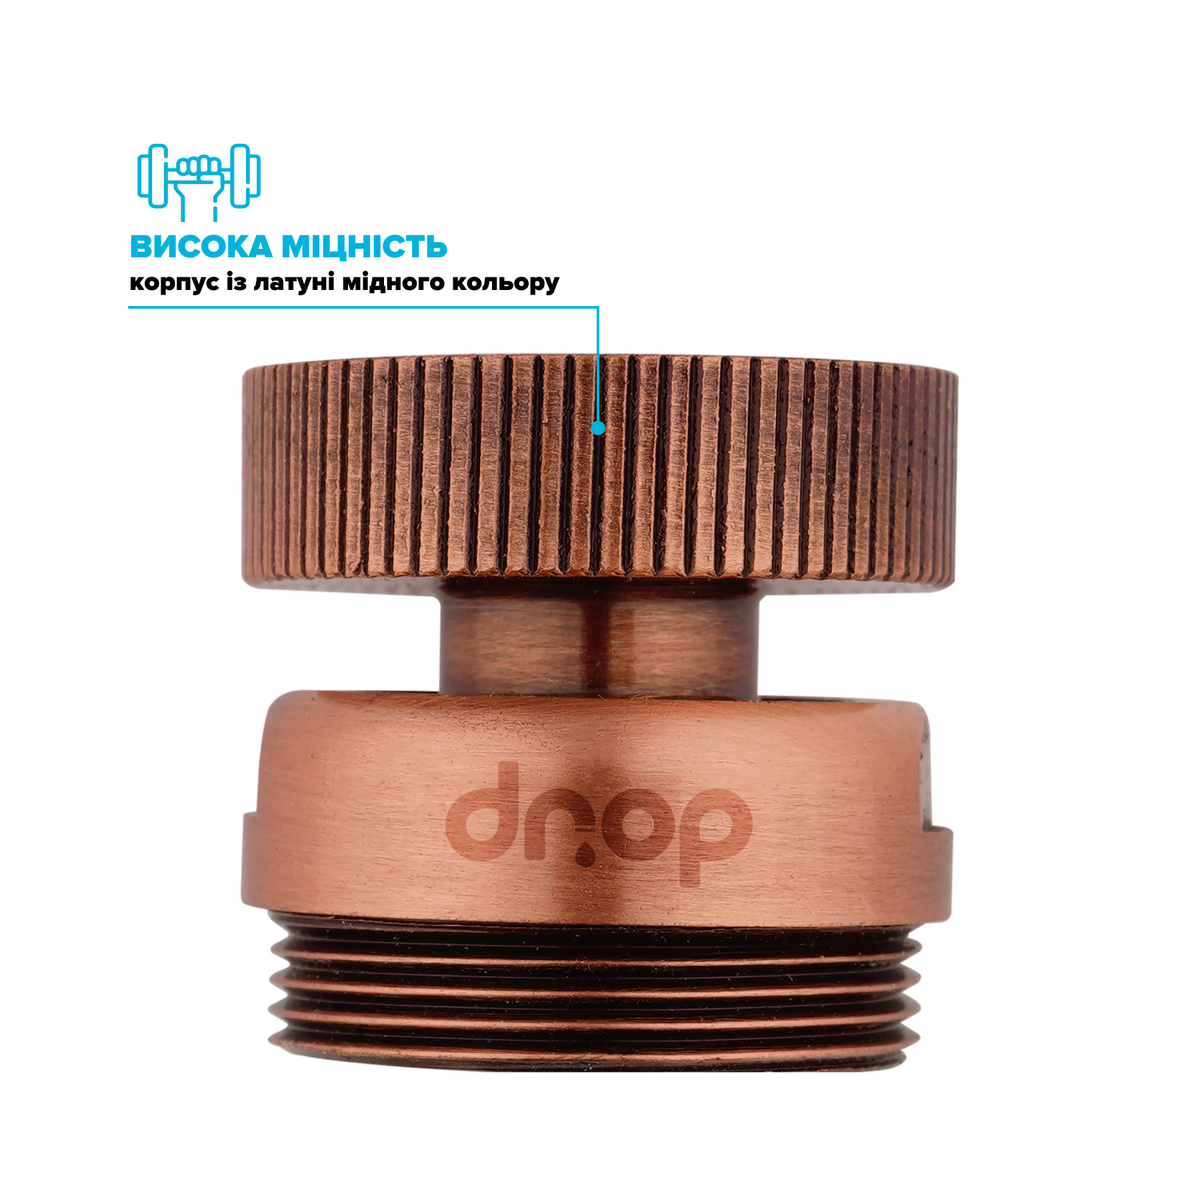 Поворотный 360° адаптер DROP СOLOR CL360F-CPR внутренняя резьба 22 мм угол 15° латунь цвет медь